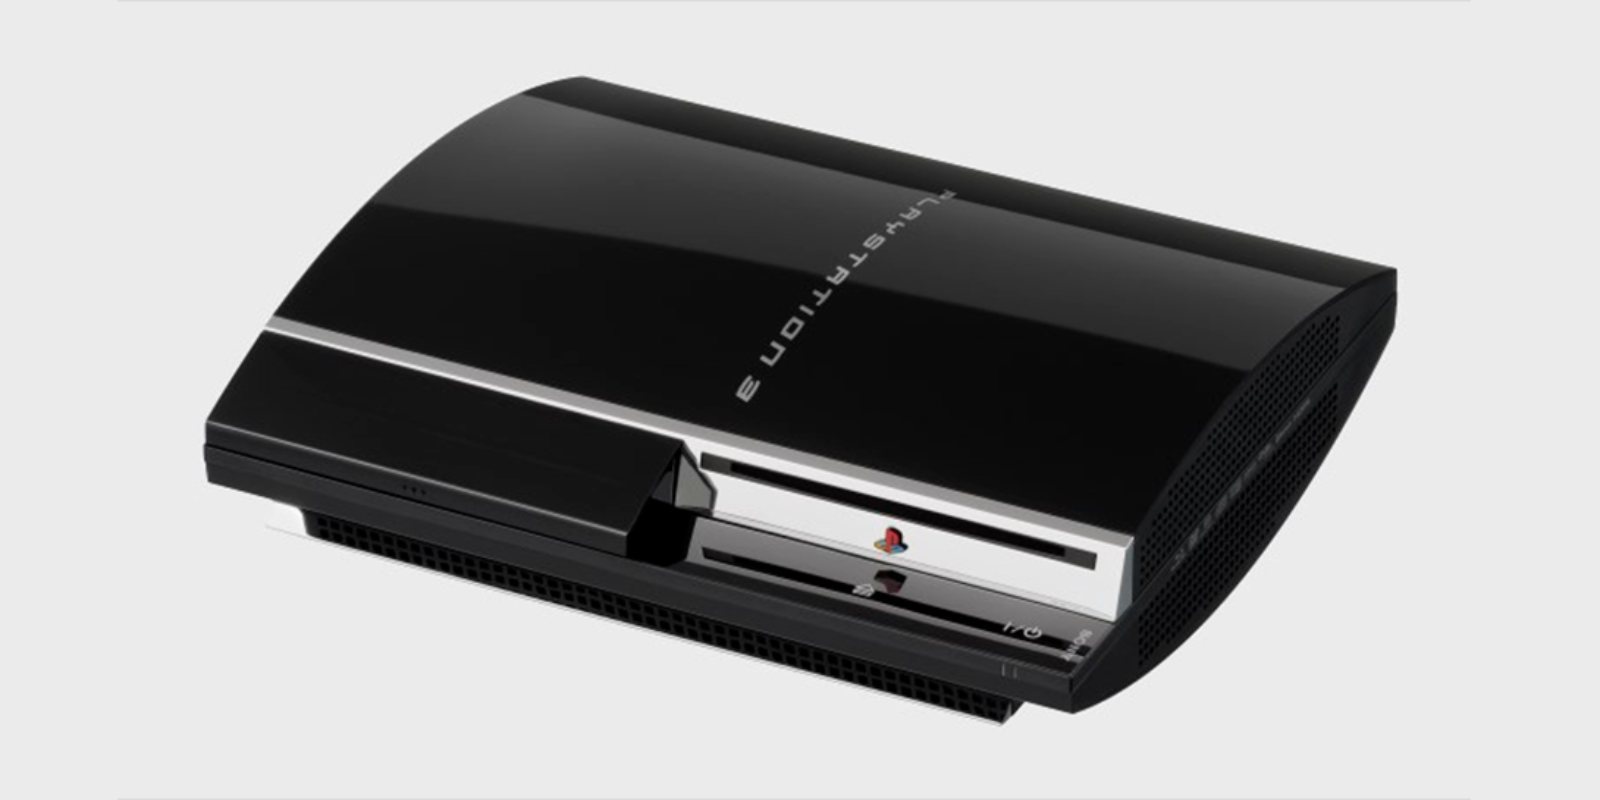 Shawn Layden reflexiona sobre los errores de Sony con PlayStation 3